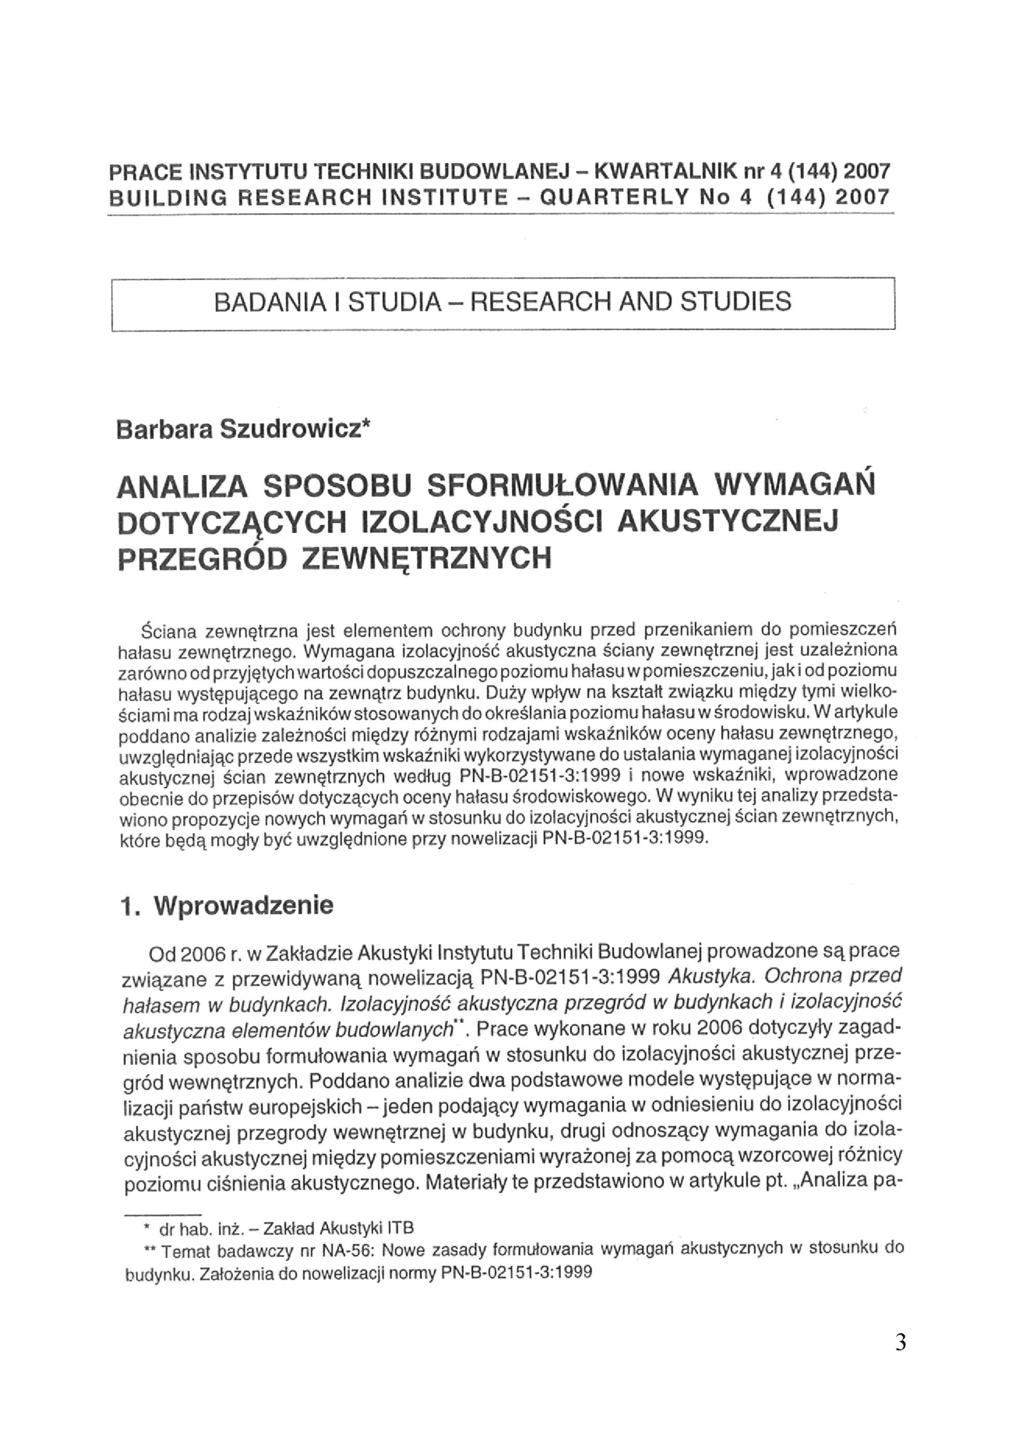 PRACE INSTYTUTU TECHNIKI BUDOWLANEJ - KWARTALNIK nr 4 (144) 2007 BUILDING RESEARCH INSTITUTE - QUARTERLY No 4 (144) 2007 BADANIA I STUDIA - RESEARCH AND STUDIES Barbara Szudrowicz* ANALIZA SPOSOBU